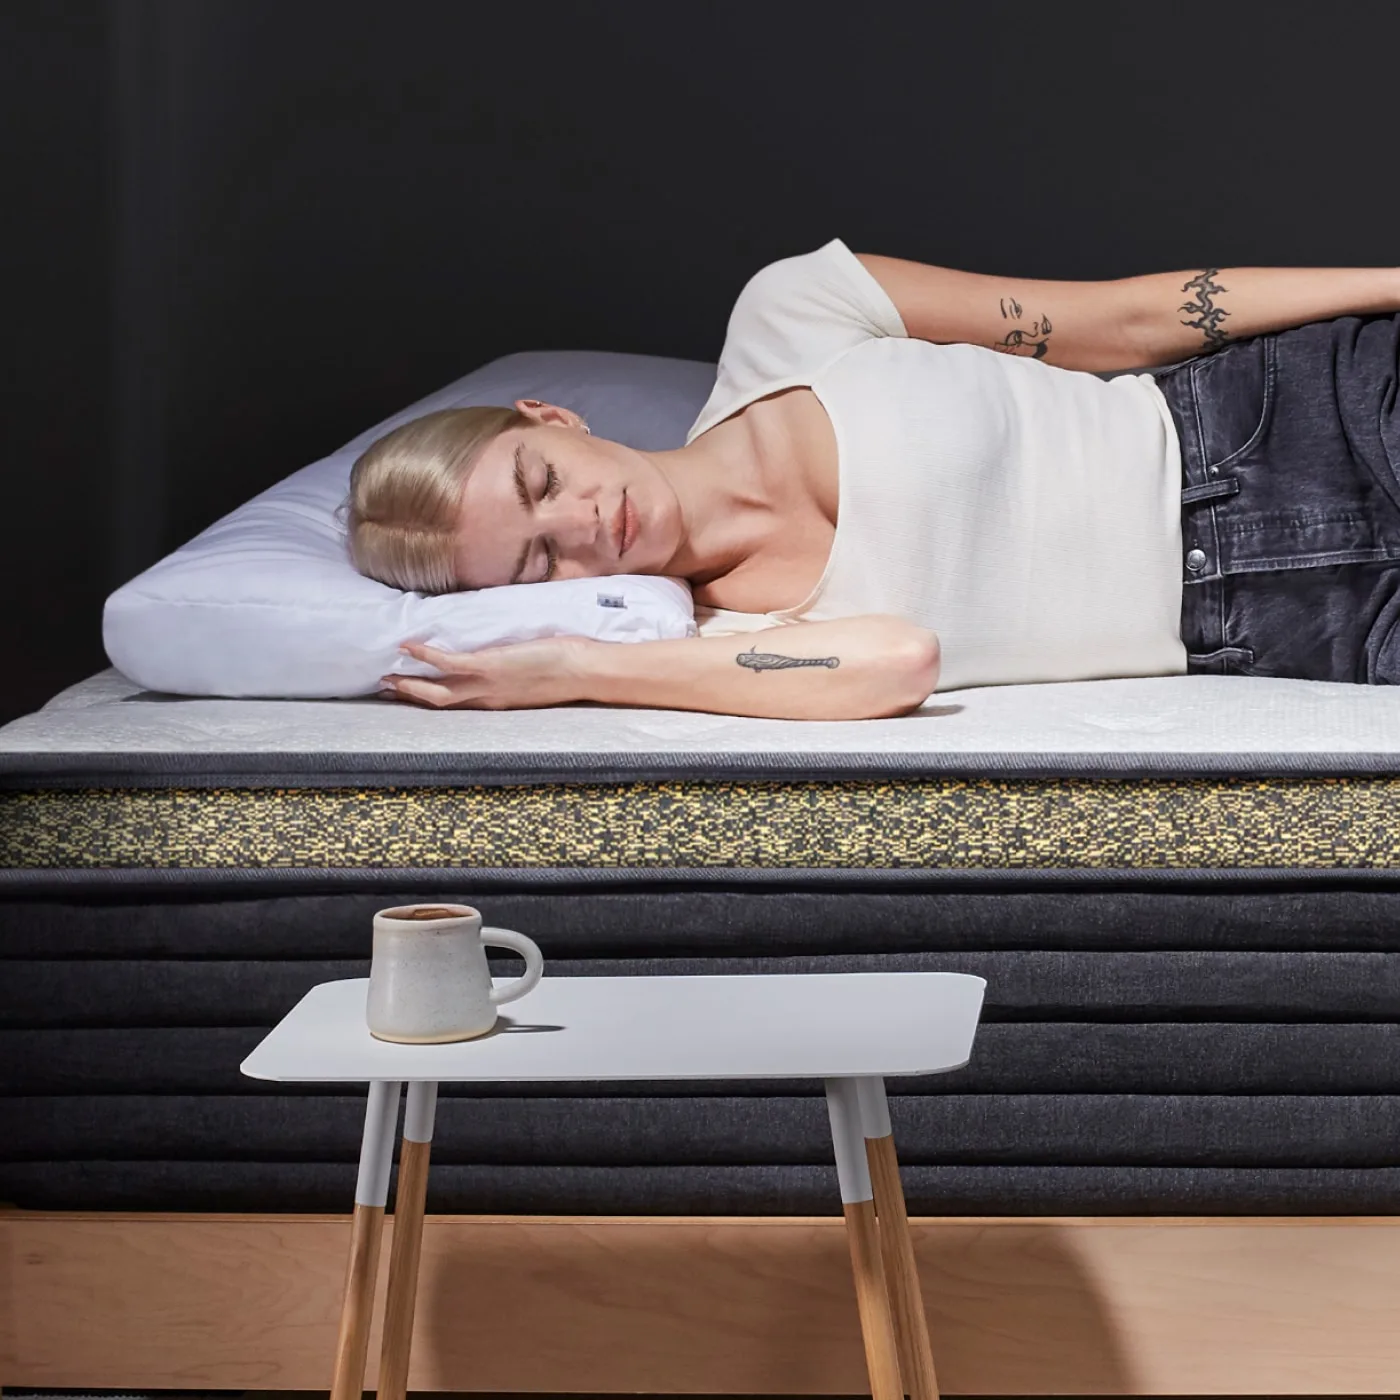 A woman sleeps on a mattress, with a mug on a side table.